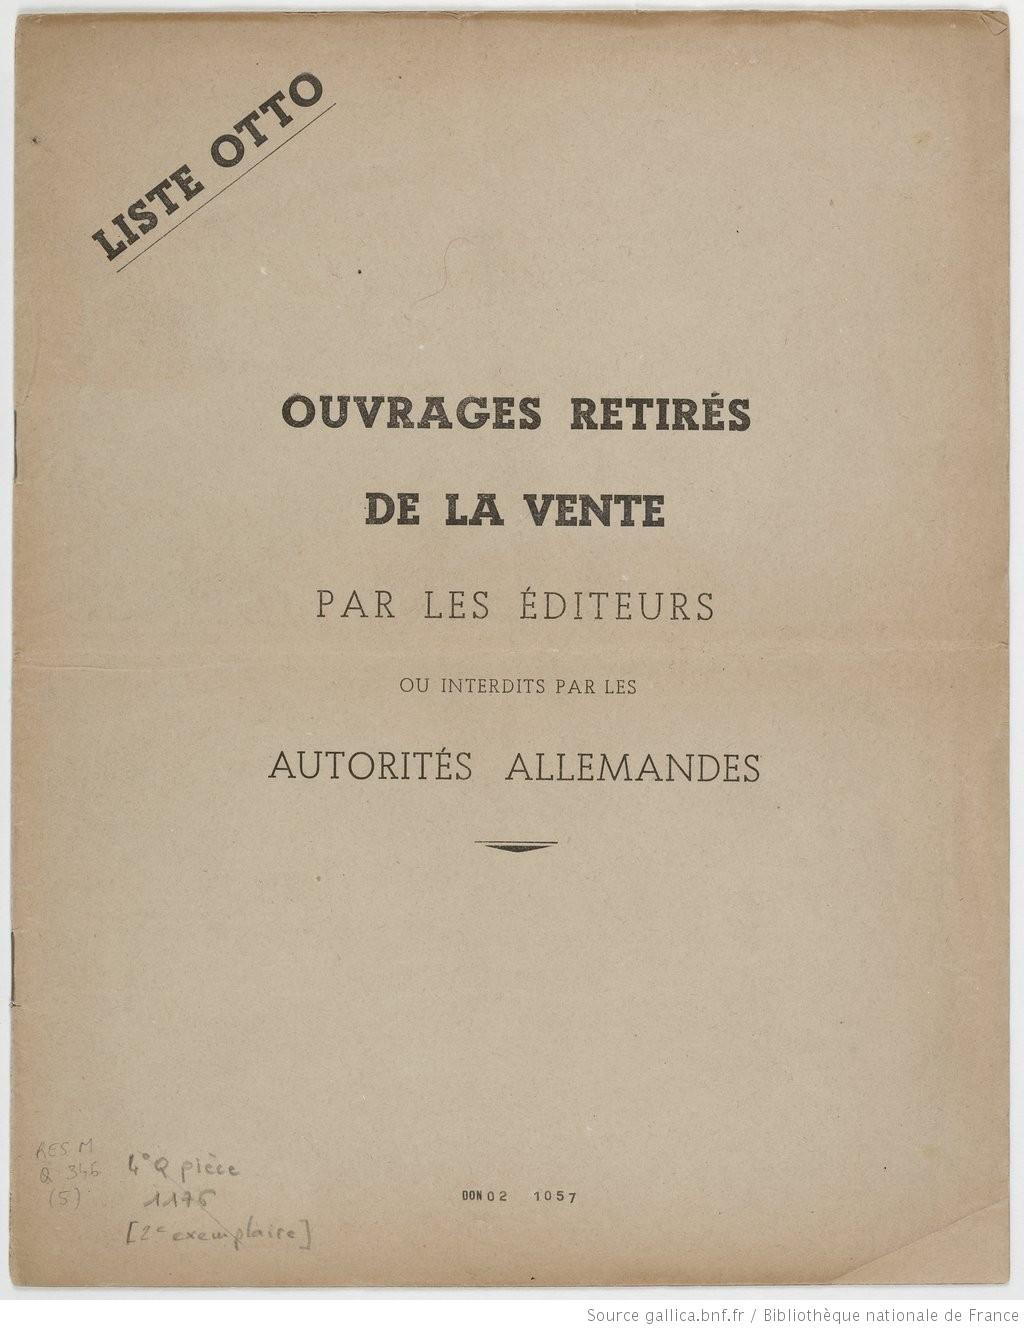 La page de garde de la liste Otto publié en septembre 1940. [Gallica.bnf.fr]